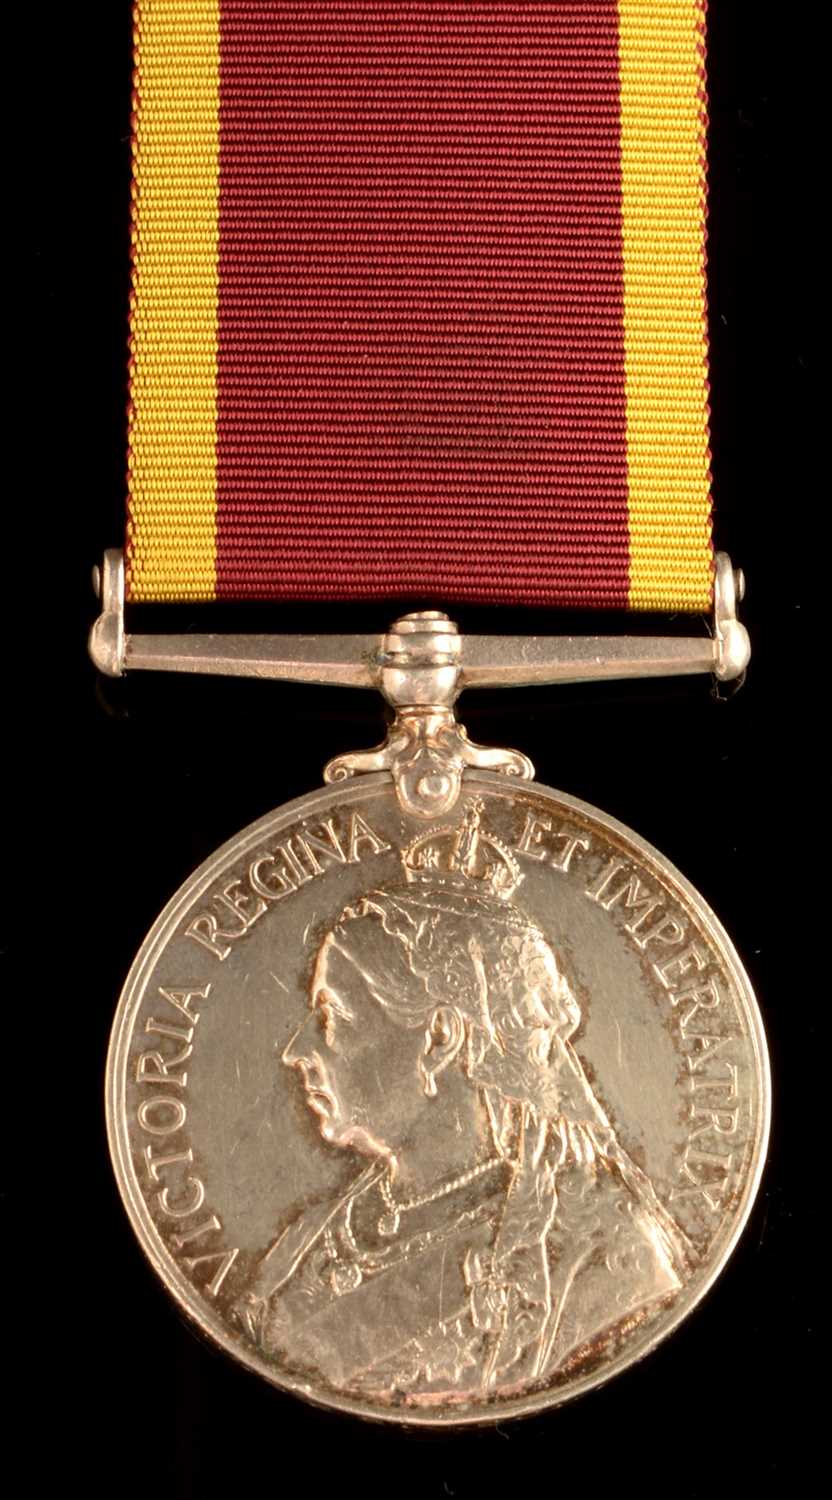 Lot 1708 - China War medal 1900